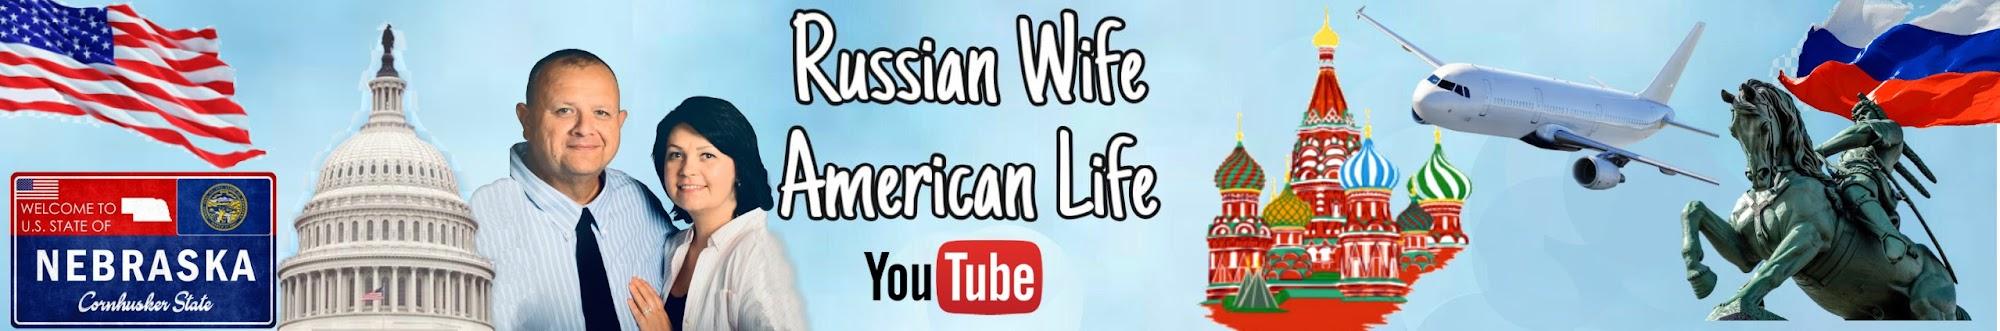 Американская жизнь Русской жены